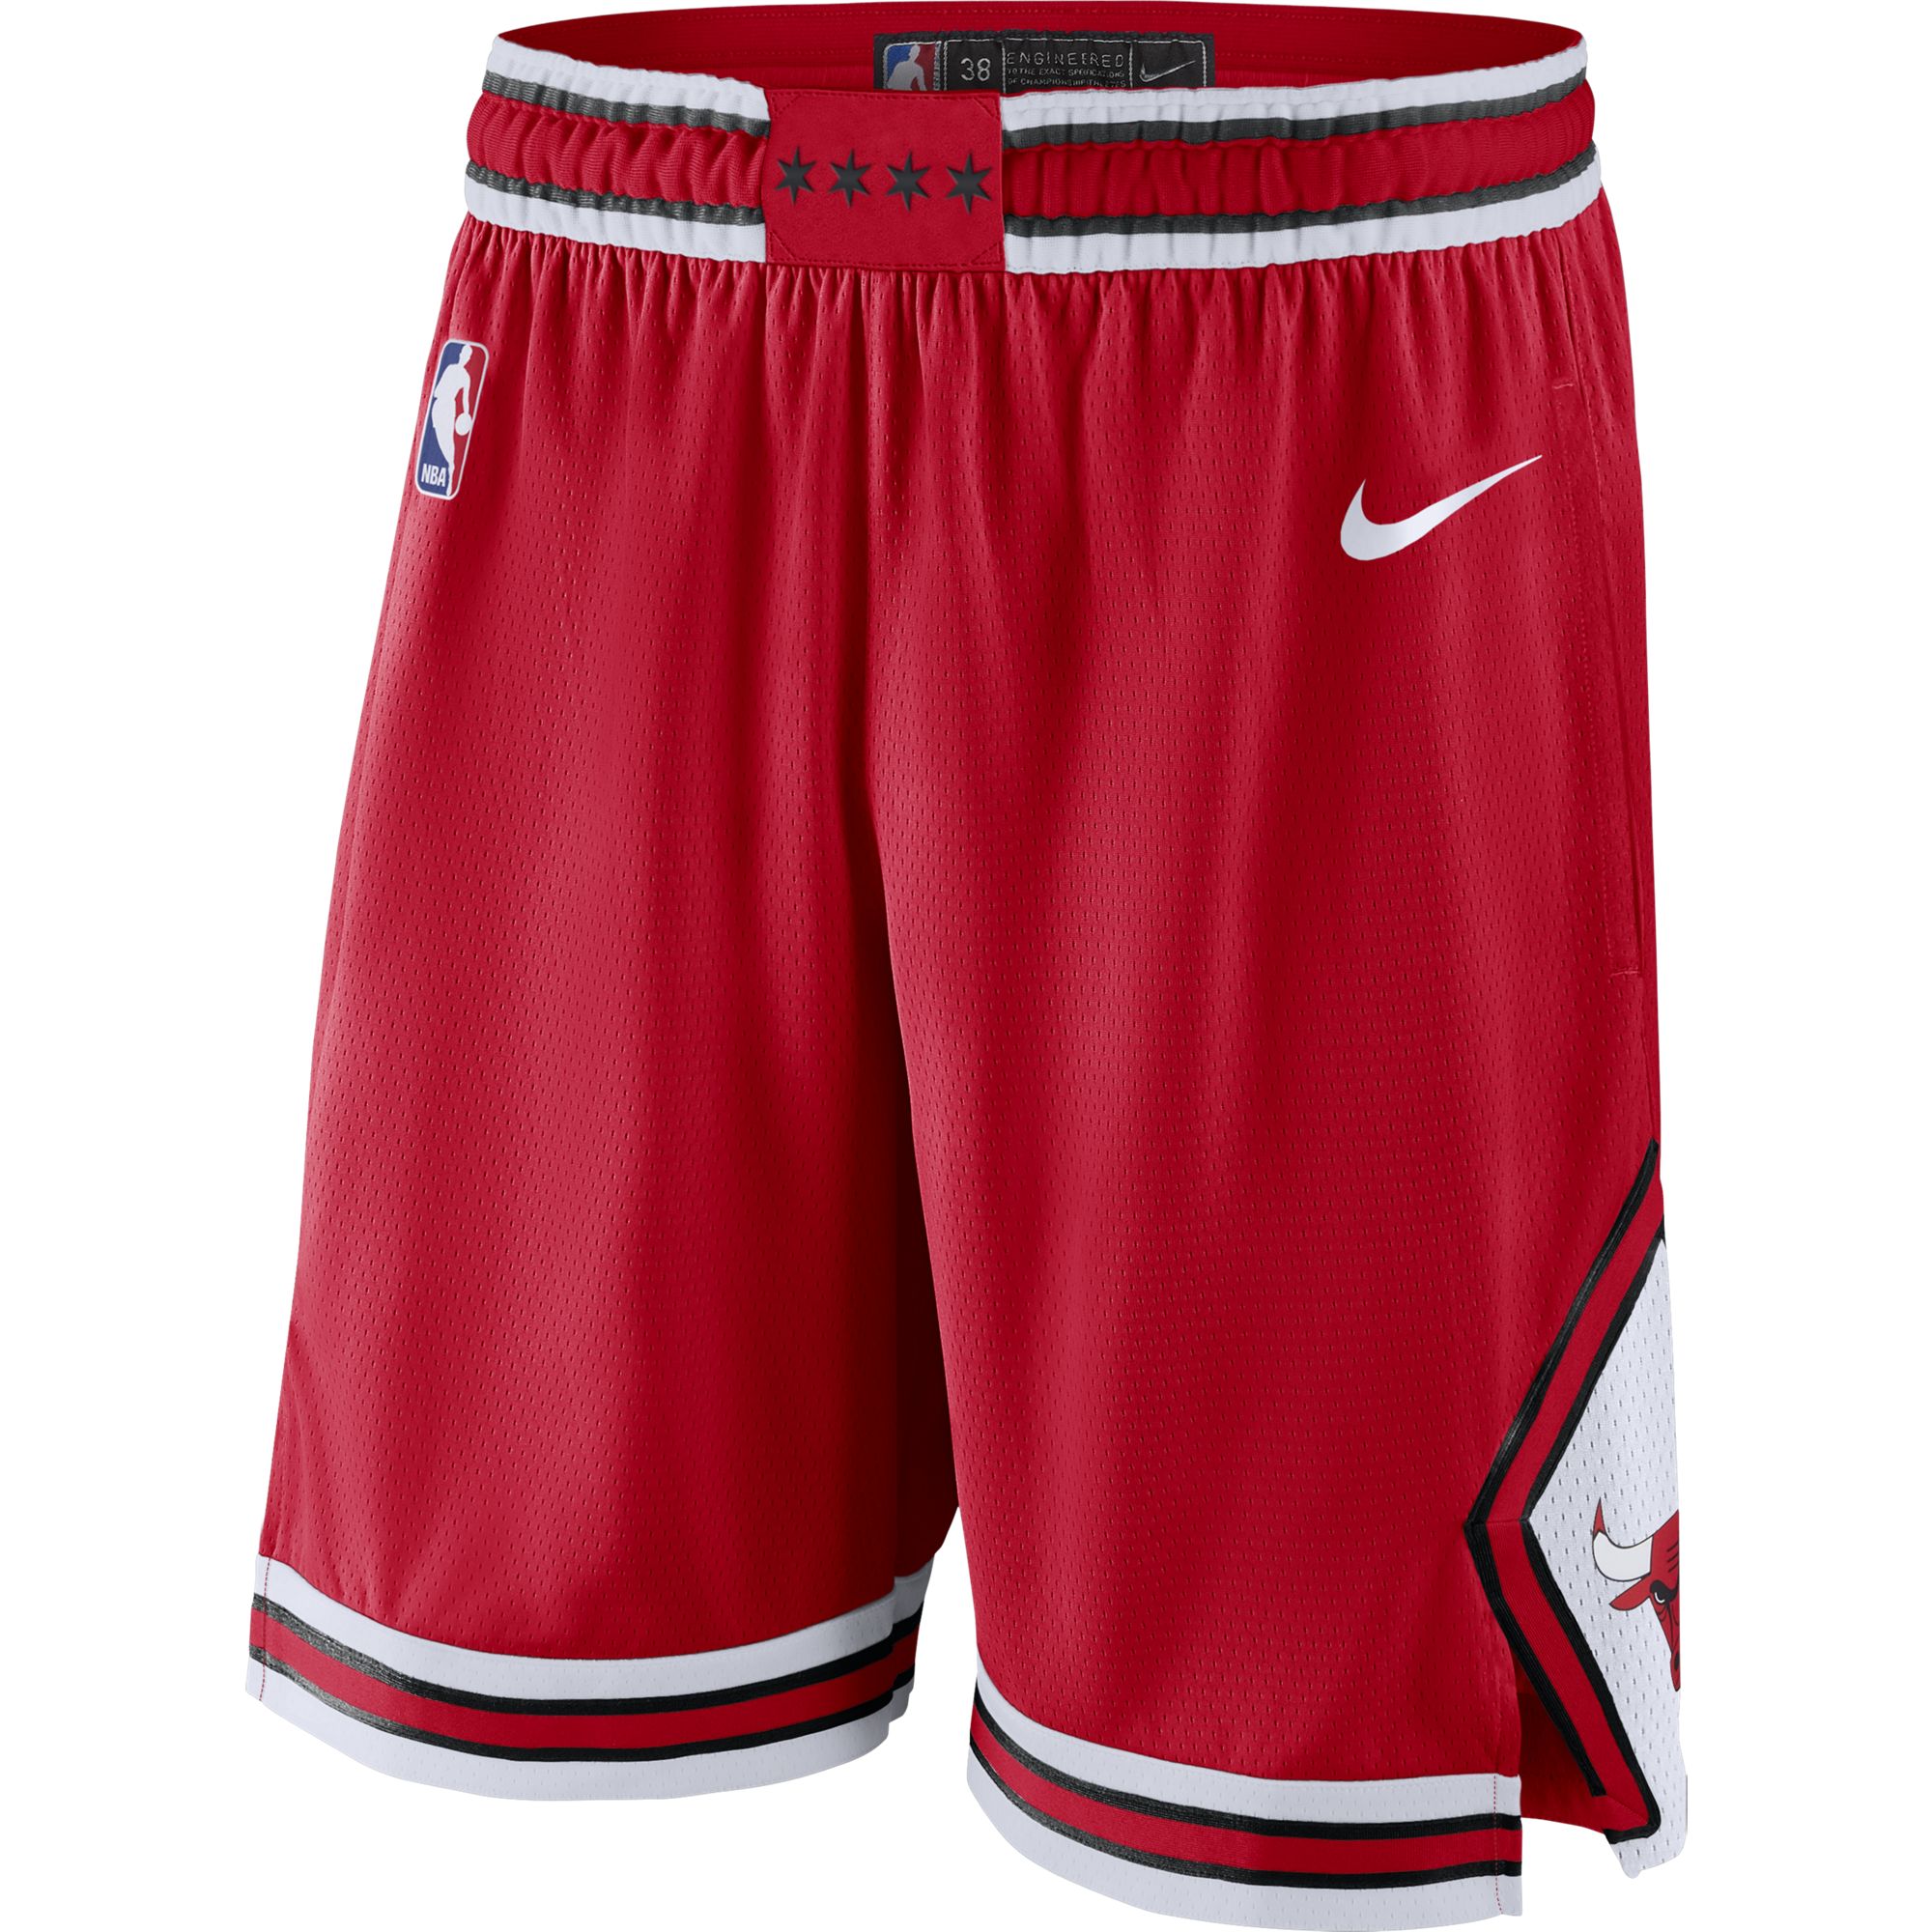 Баскетбольные шорты Nike Chicago Bulls Icon Edition - картинка